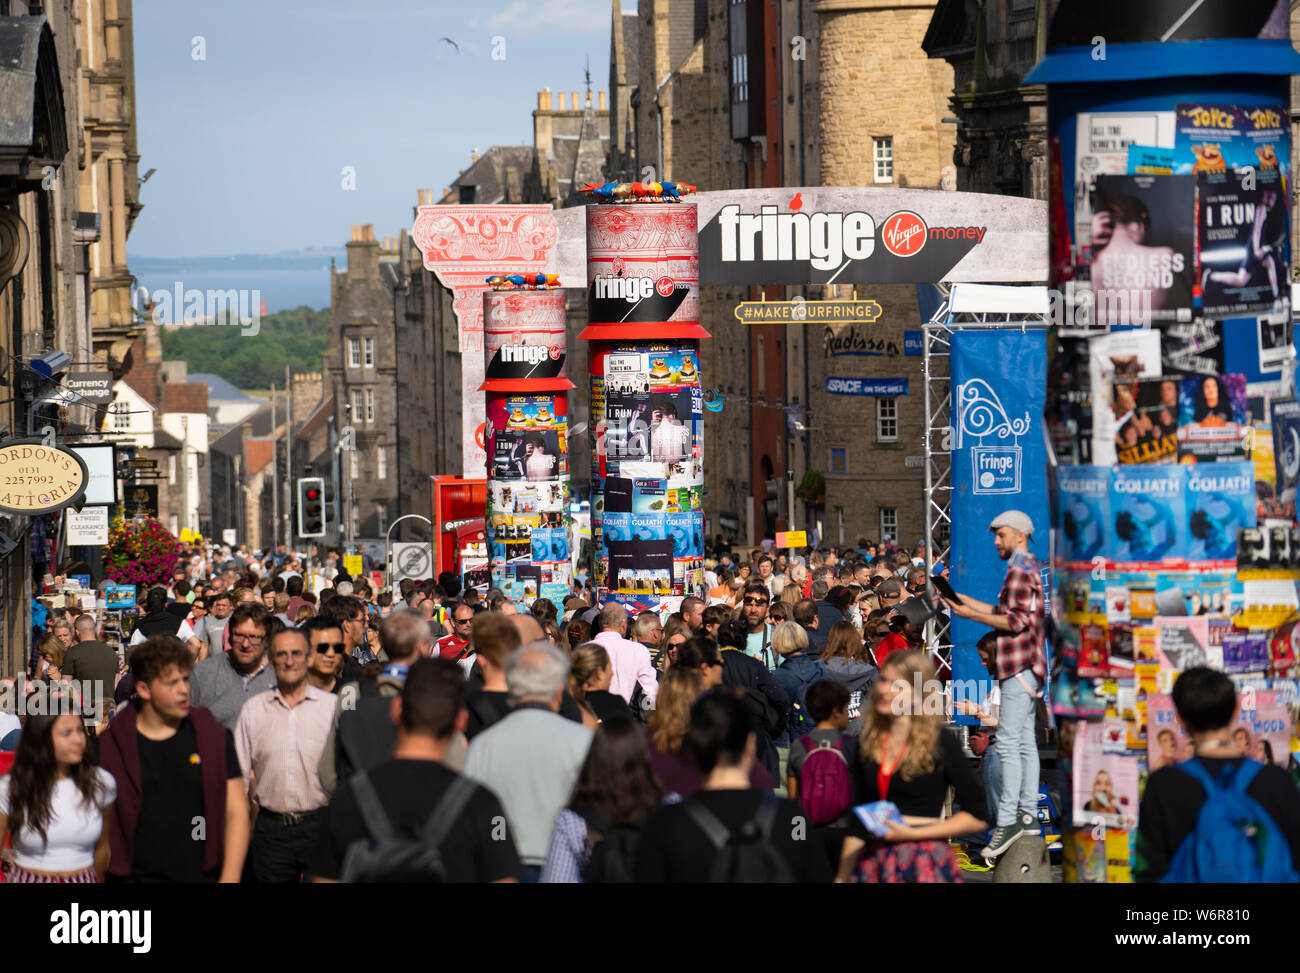 Edinburgh, Ecosse, Royaume-Uni. 2 août 2019. Le jour de l'ouverture de l'Edinburgh Festival Fringe le Royal Mile, dans la vieille ville d'Édimbourg est bondé de gens désireux de profiter du spectacle de rue et ensoleillée par temps chaud. Iain Masterton/Alamy Live News Banque D'Images